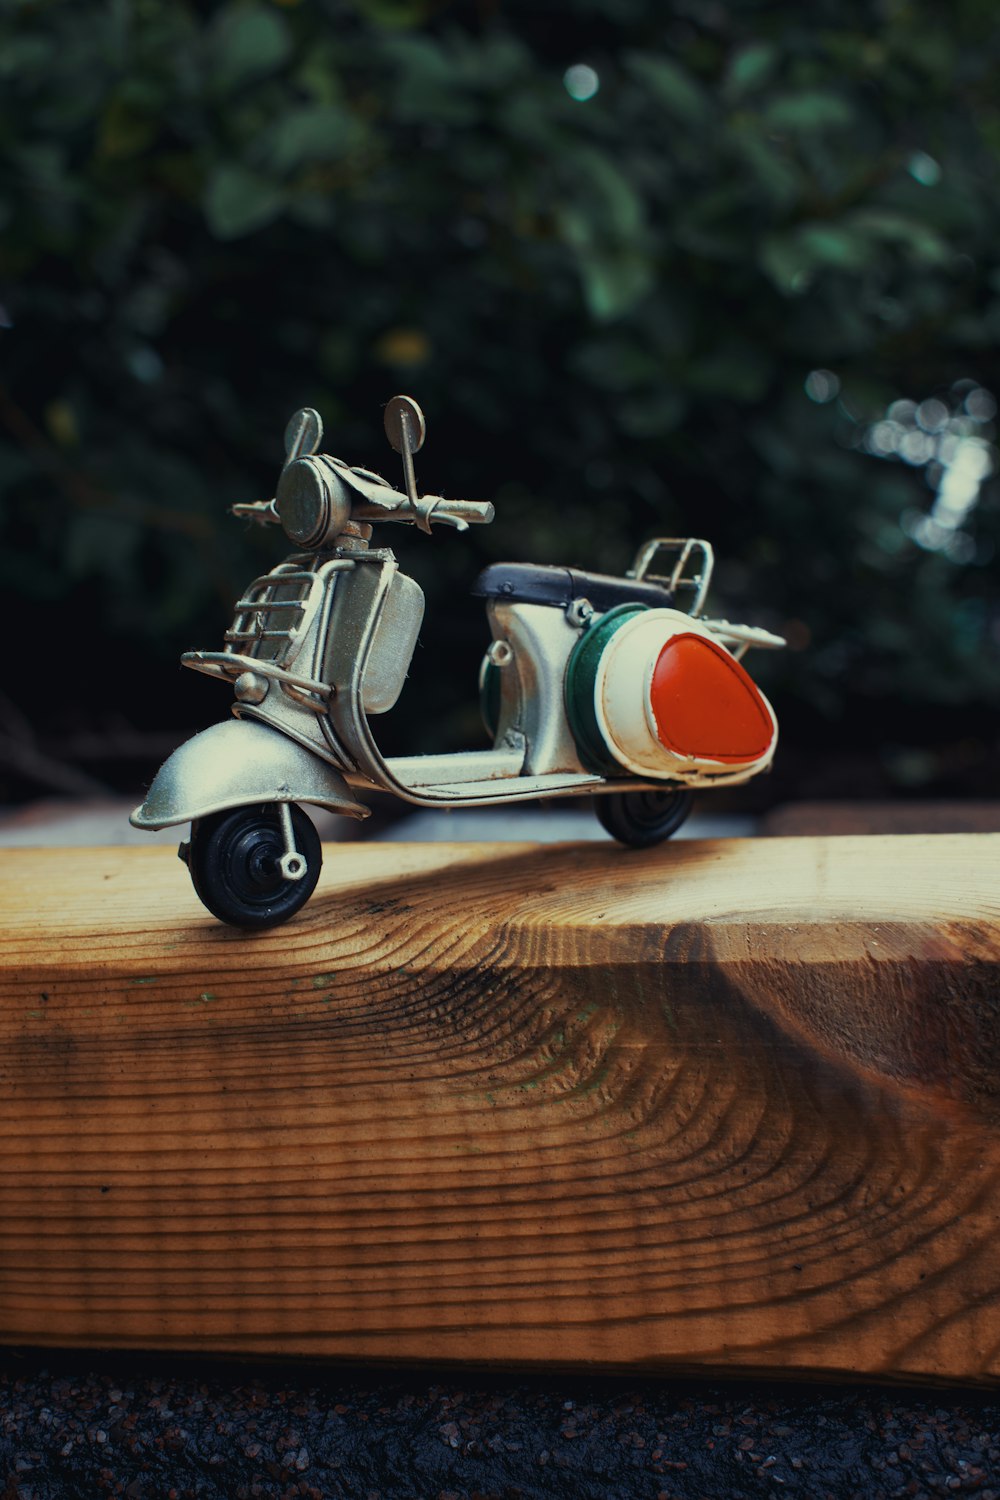 Un scooter de juguete sentado encima de una tabla de madera